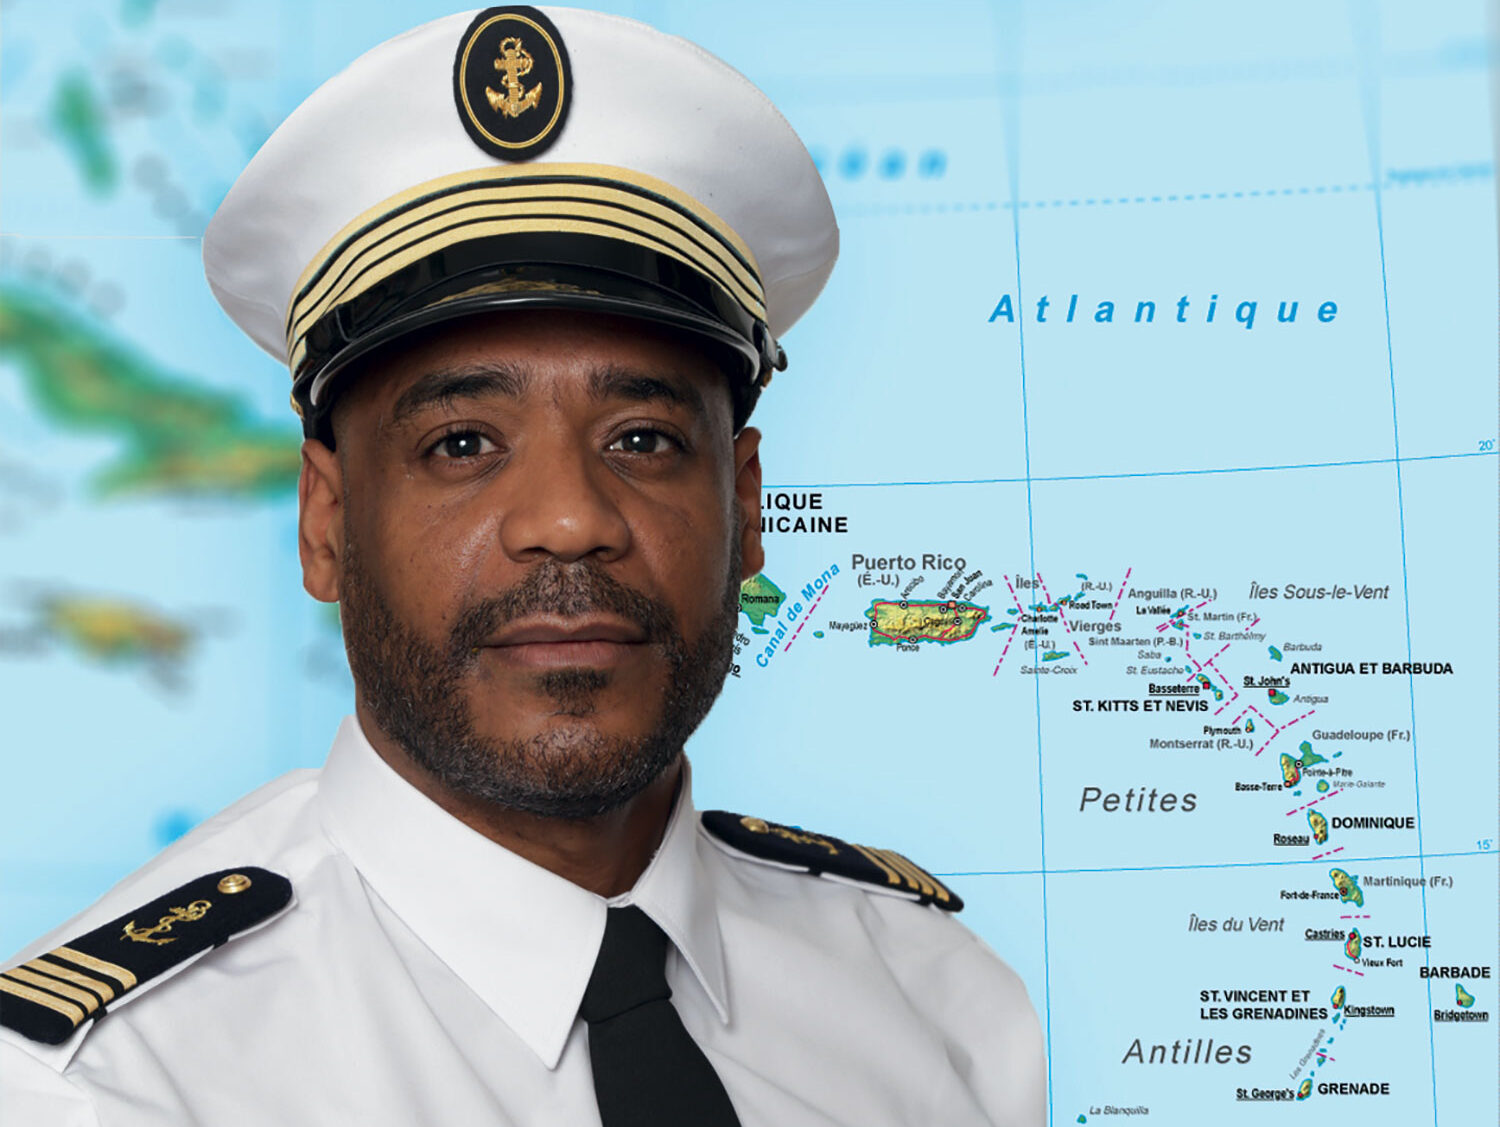 Questions à Jean-Stéphane Roul, Directeur général de Karibs Link : ”Un nouvel armateur de la Caraïbe”